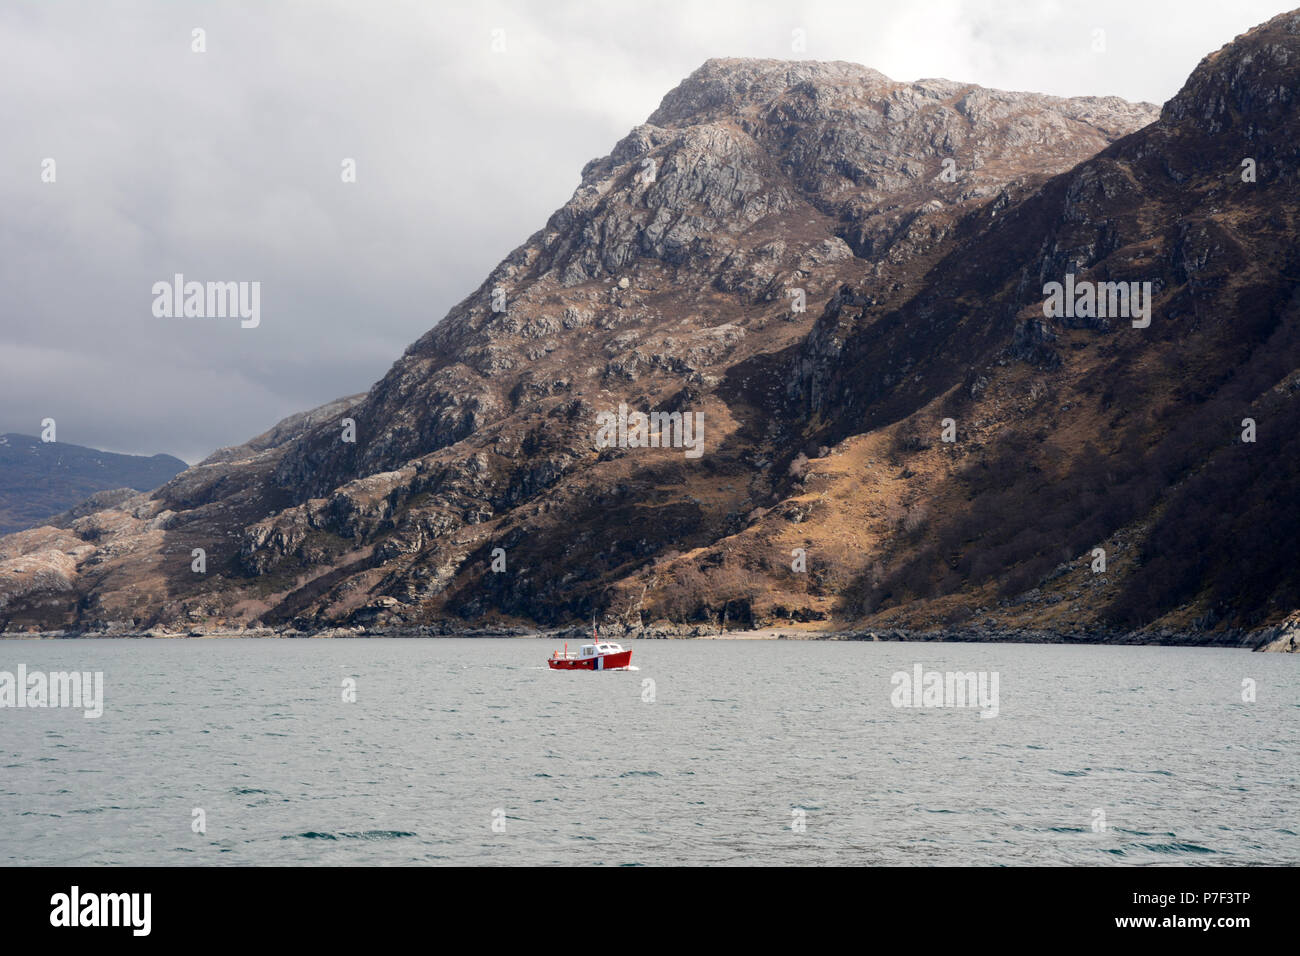 Un bateau sous les montagnes dans le Loch Nevis au large de la côte de la péninsule de Knoydart, dans les Highlands écossais, Ecosse, Grande-Bretagne. Banque D'Images